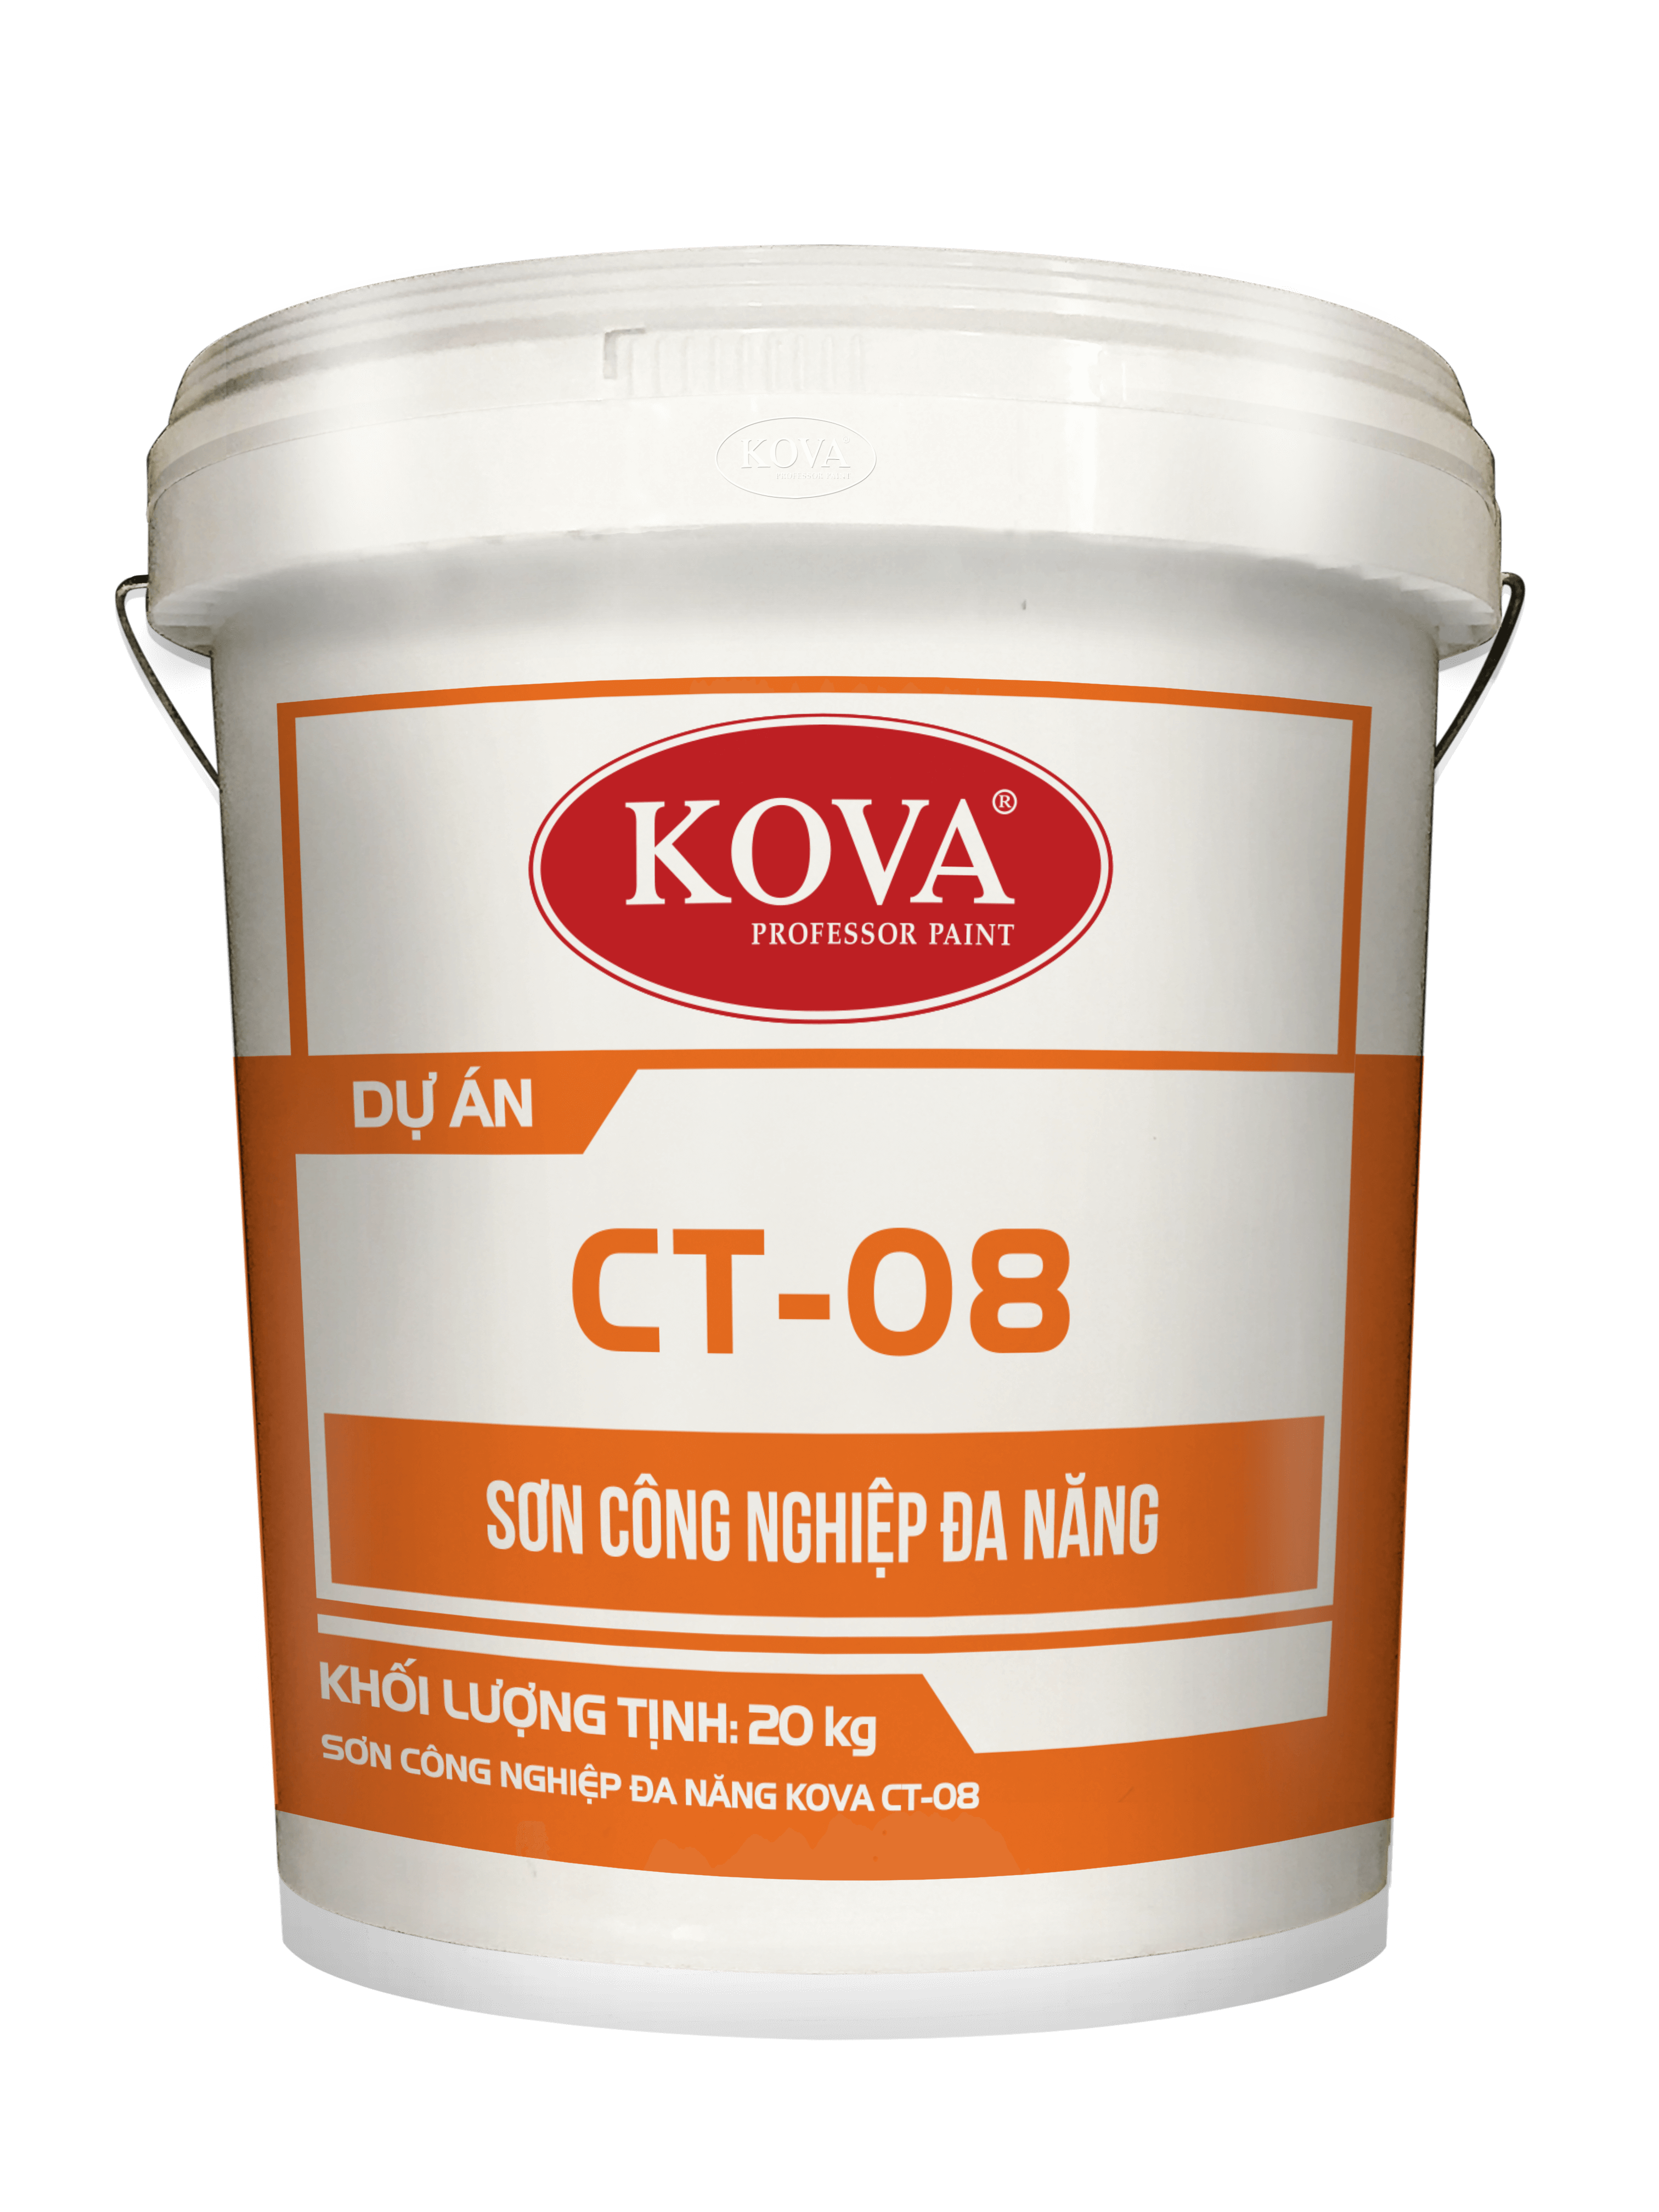 Báo giá sơn Kova CT-08: Cùng xem qua hình ảnh sơn Kova CT-08 mang lại hiệu quả cao và độ bền lâu dài khi sử dụng. Liên hệ để nhận báo giá hấp dẫn và sở hữu ngay sản phẩm này.